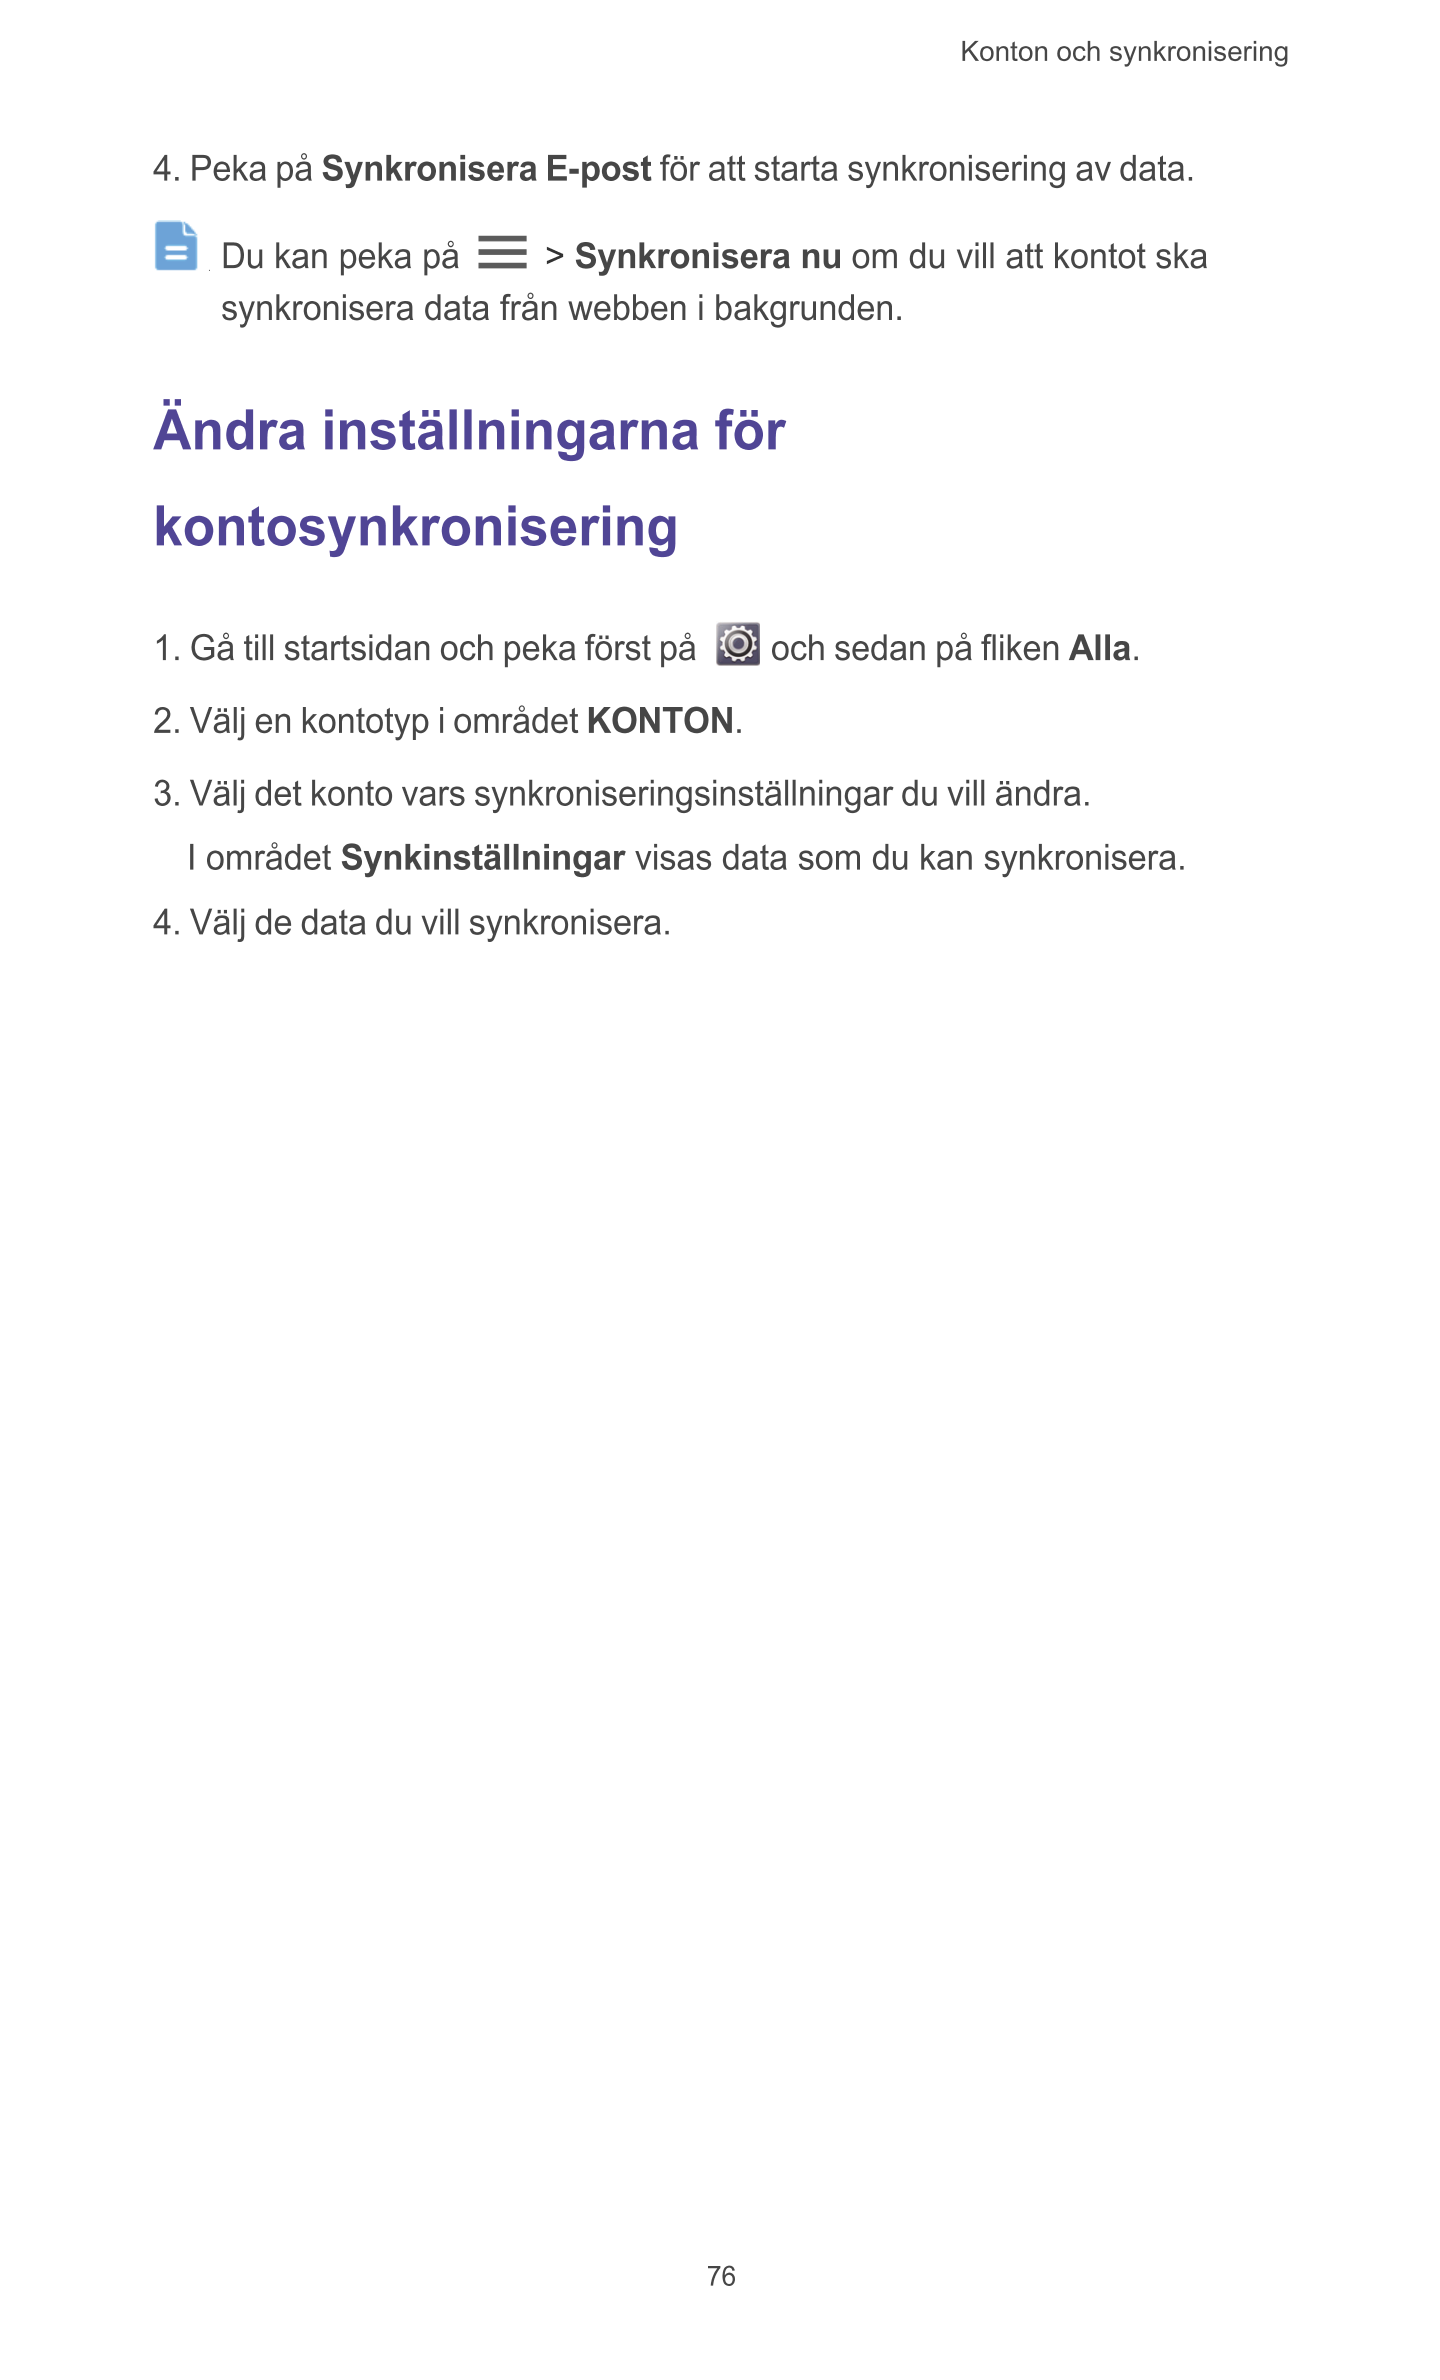 Konton och synkronisering  
4. Peka på  Synkronisera  E-post för att starta synkronisering av data. 
Du kan peka på   >  Synkron